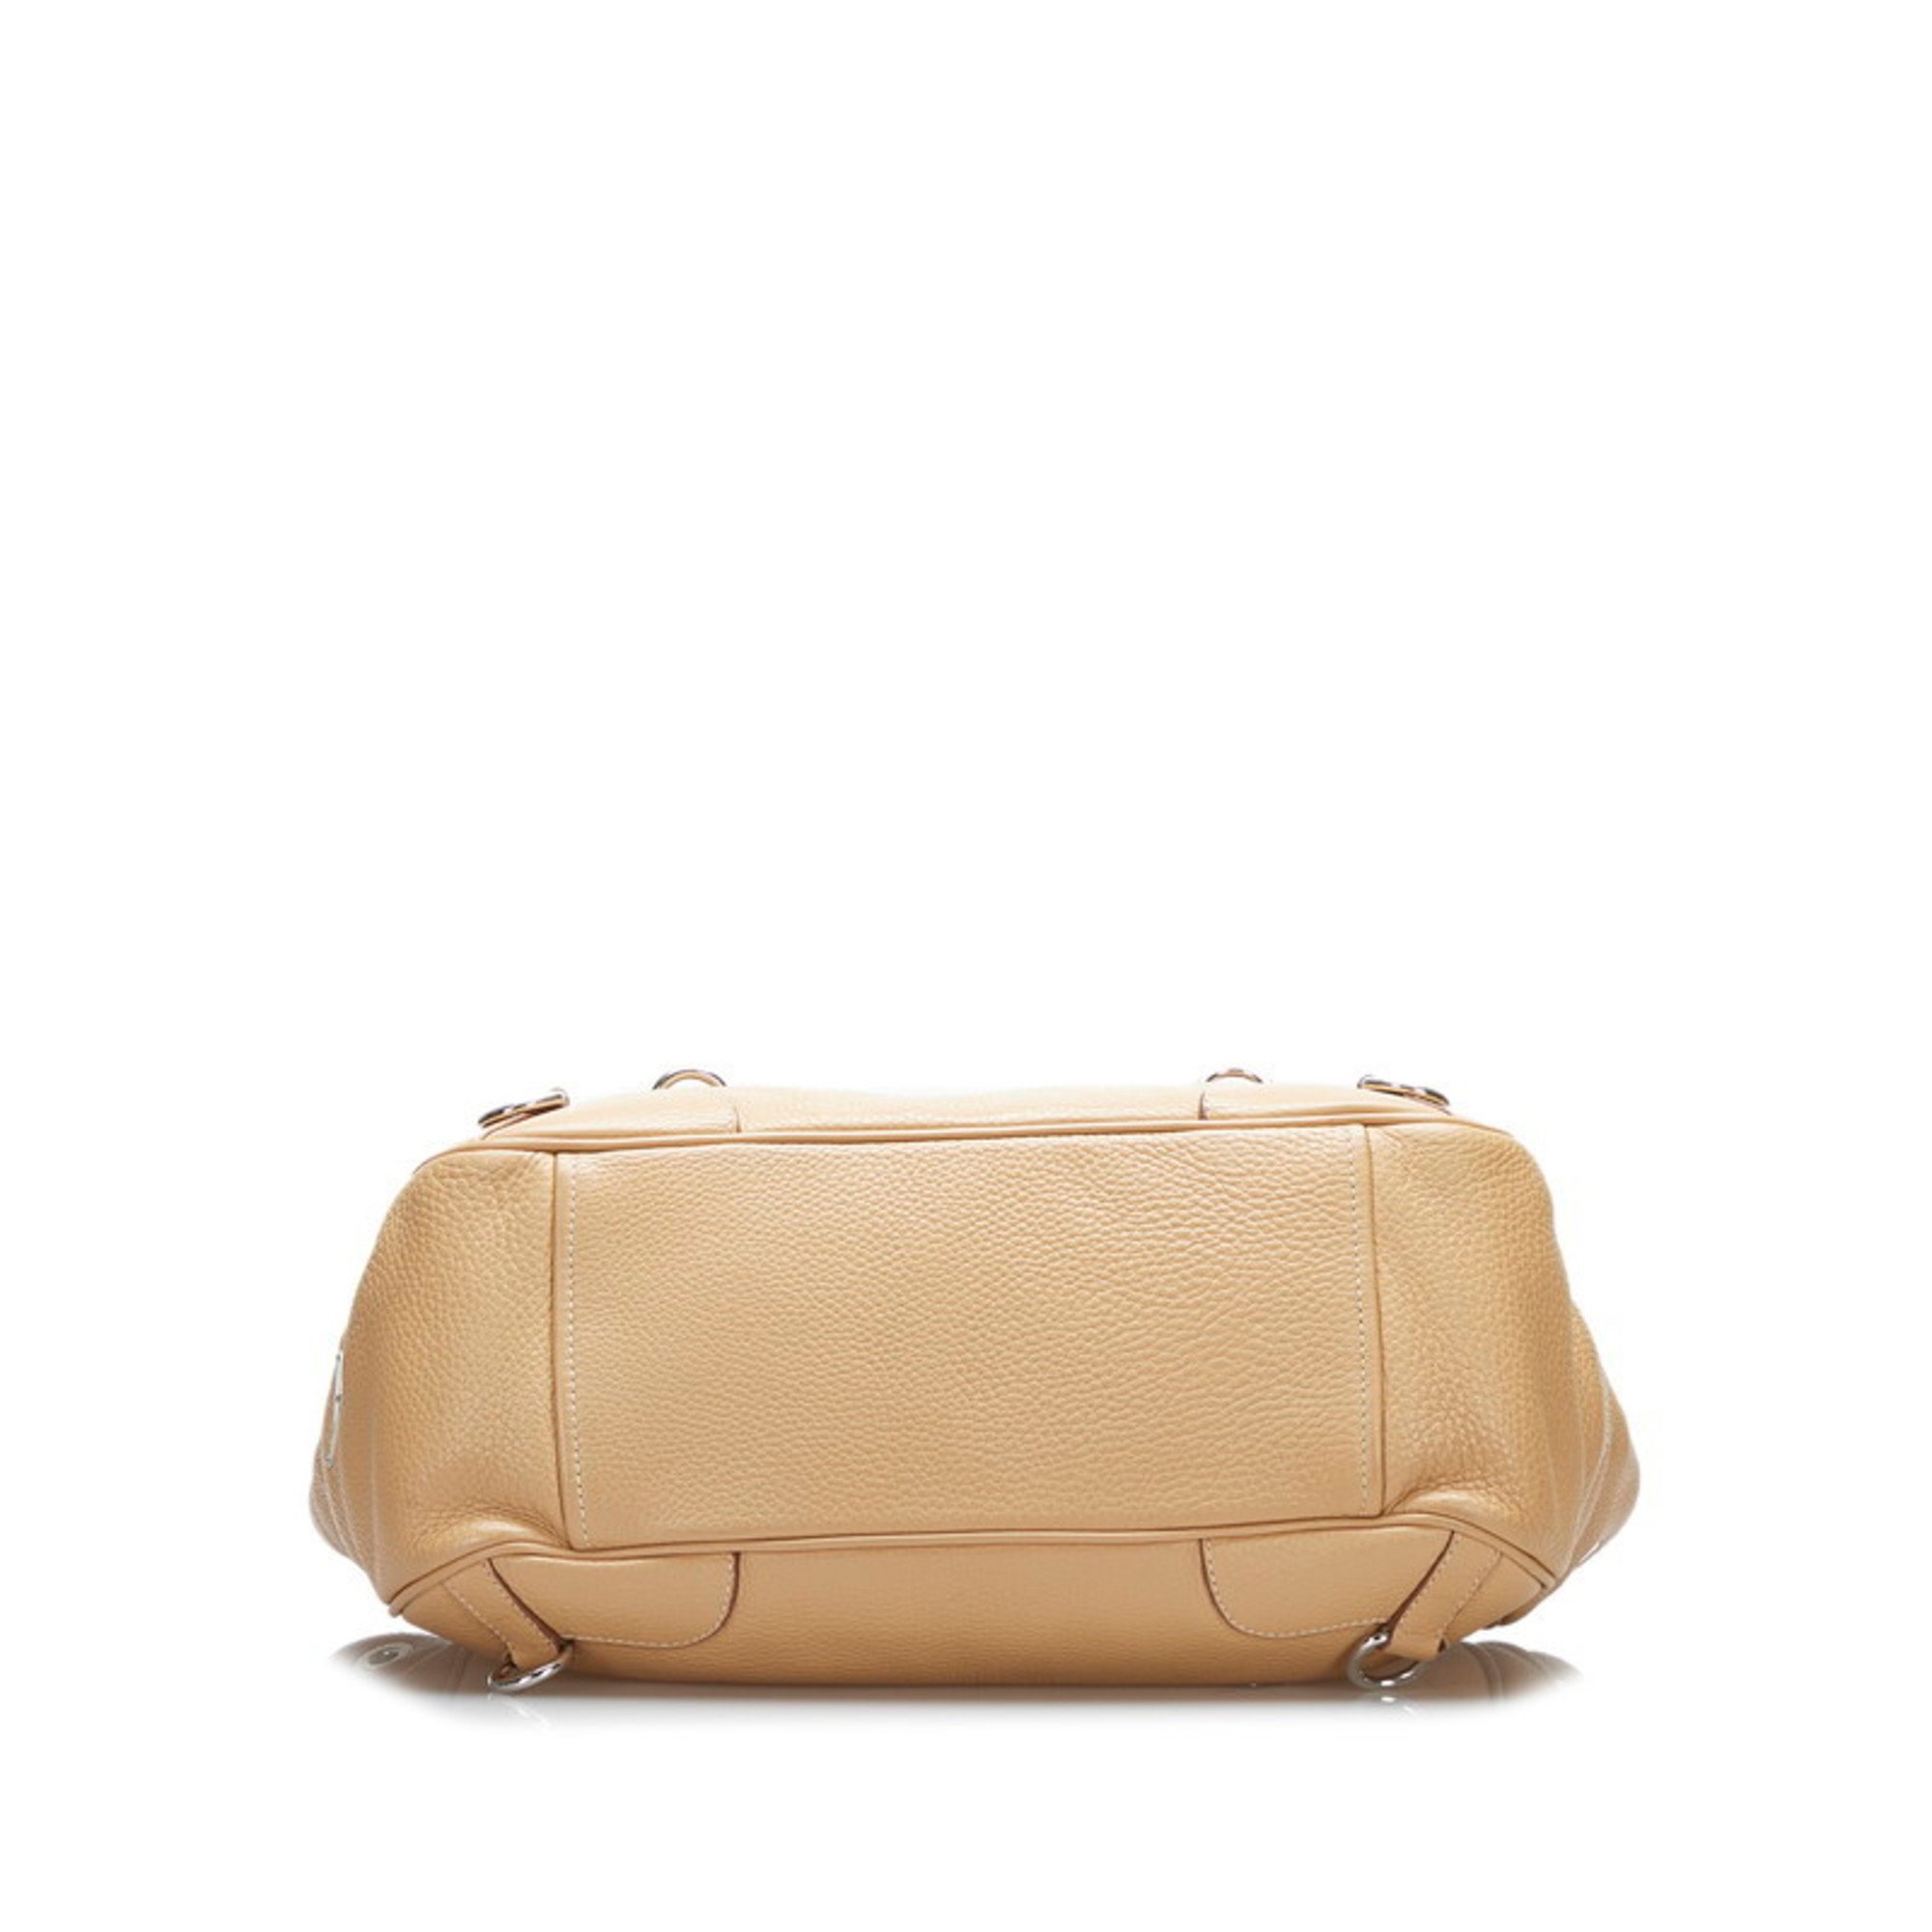 Prada handbag tote bag brown leather women's PRADA